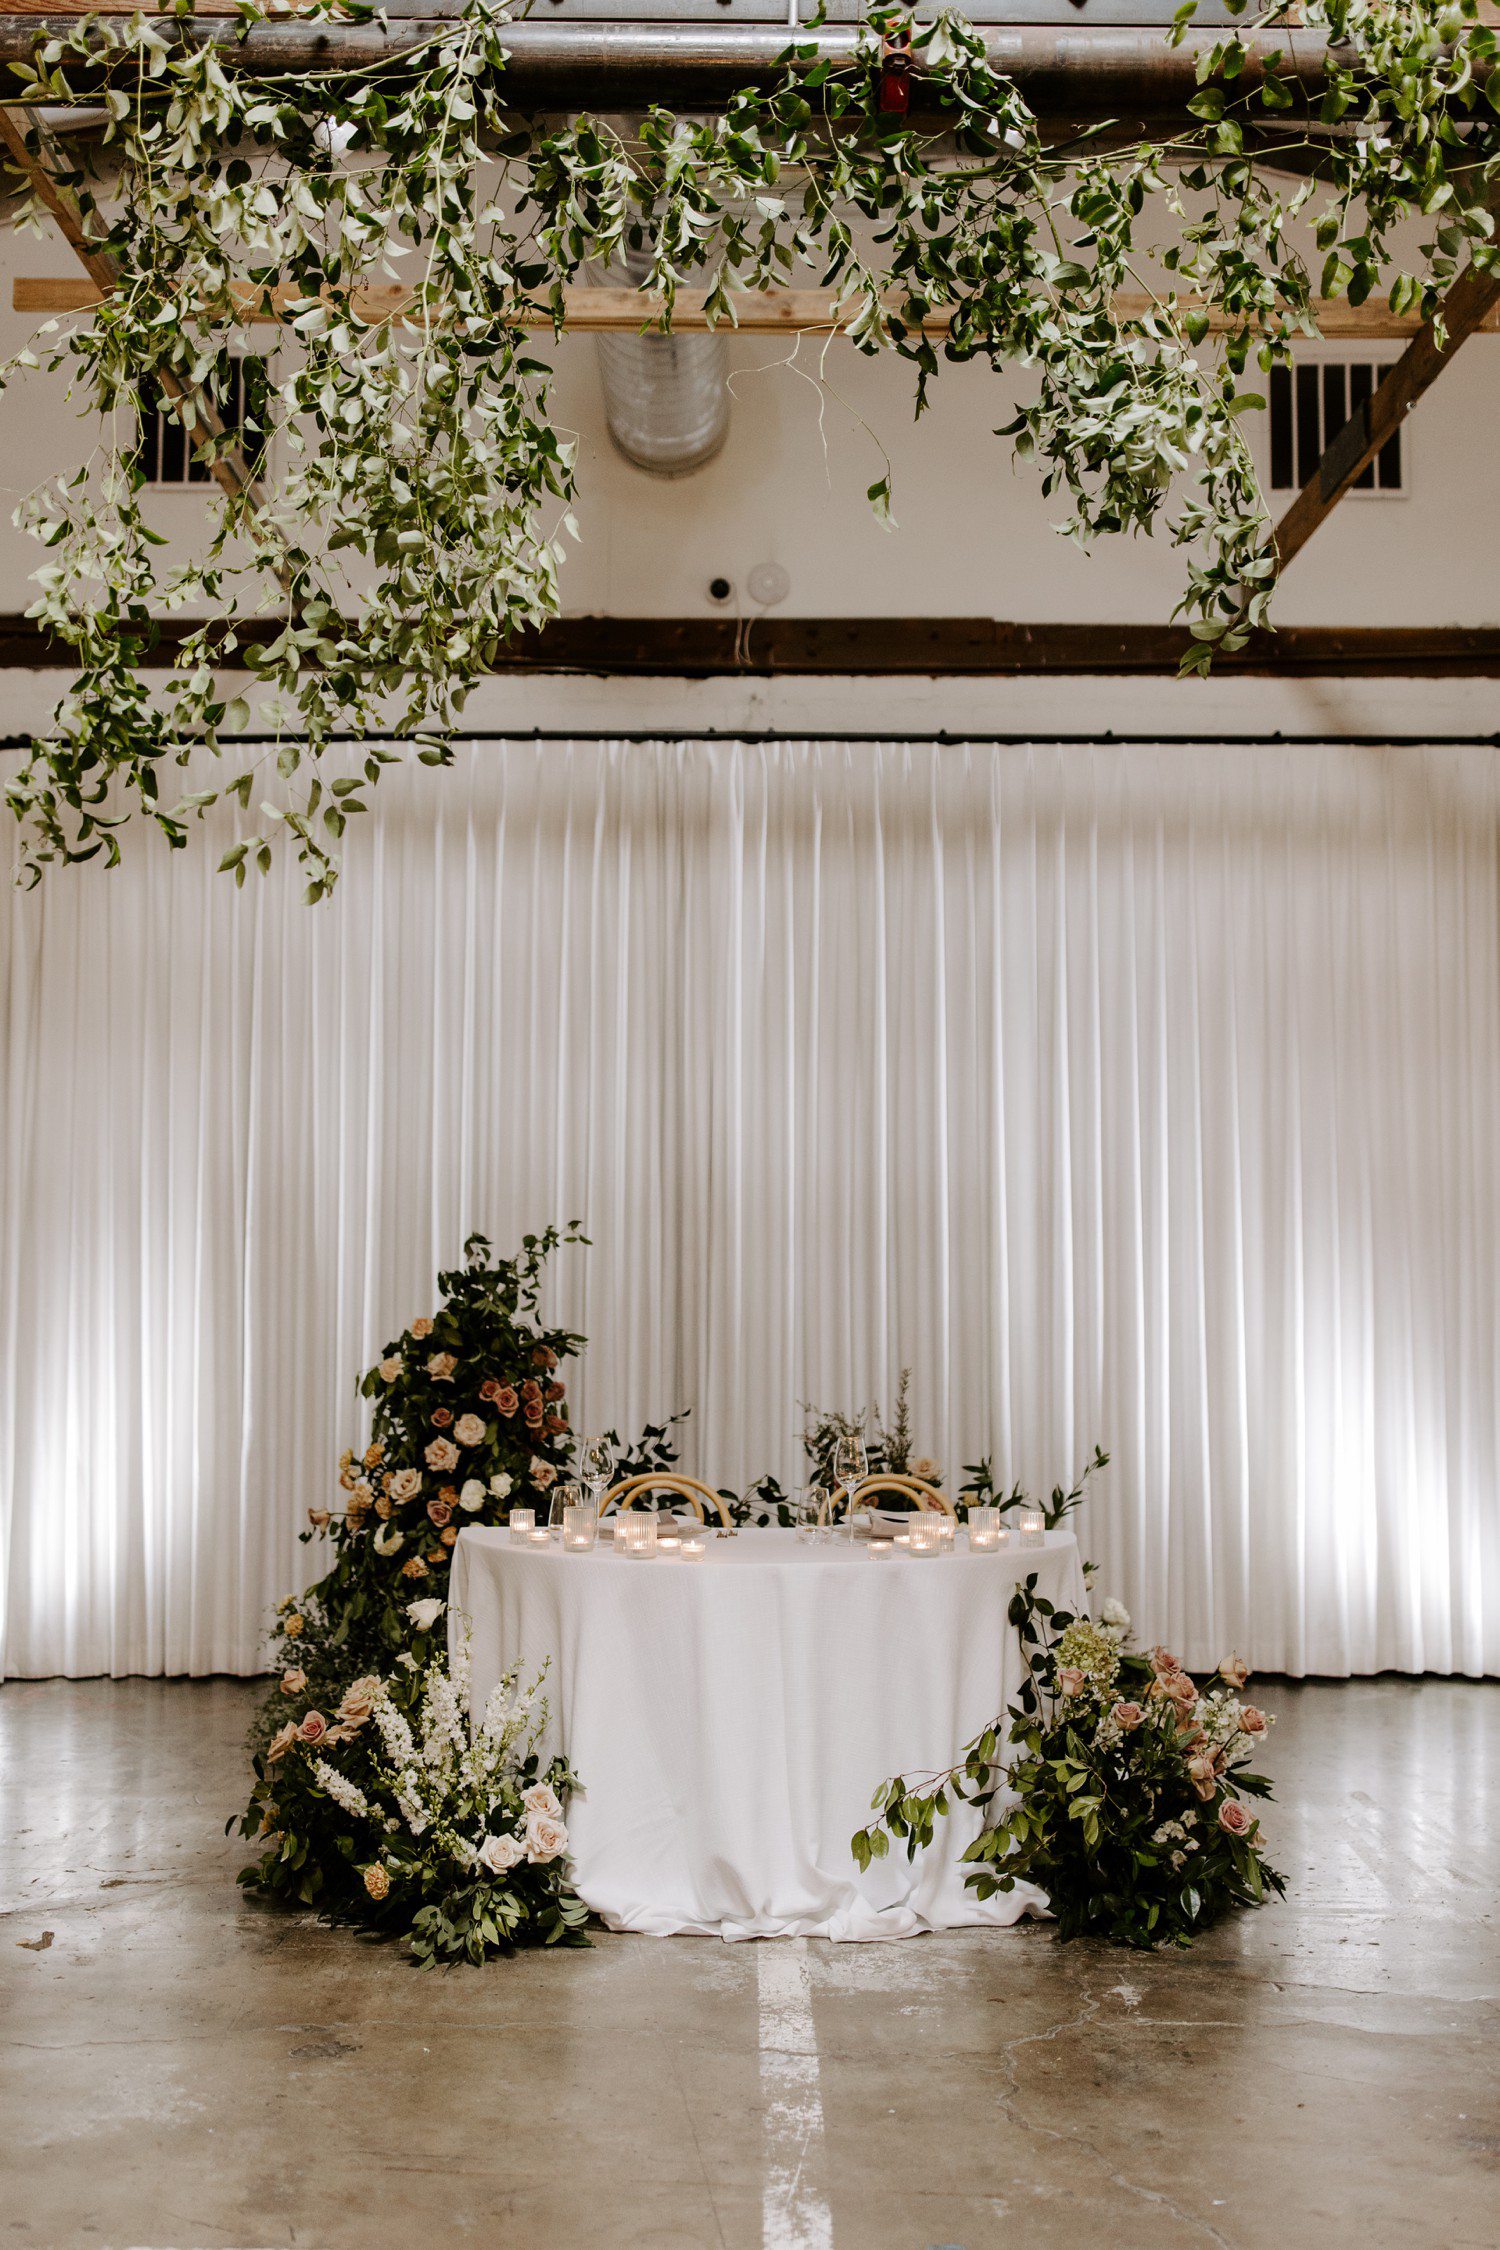 Bride and groom wedding reception table decor.